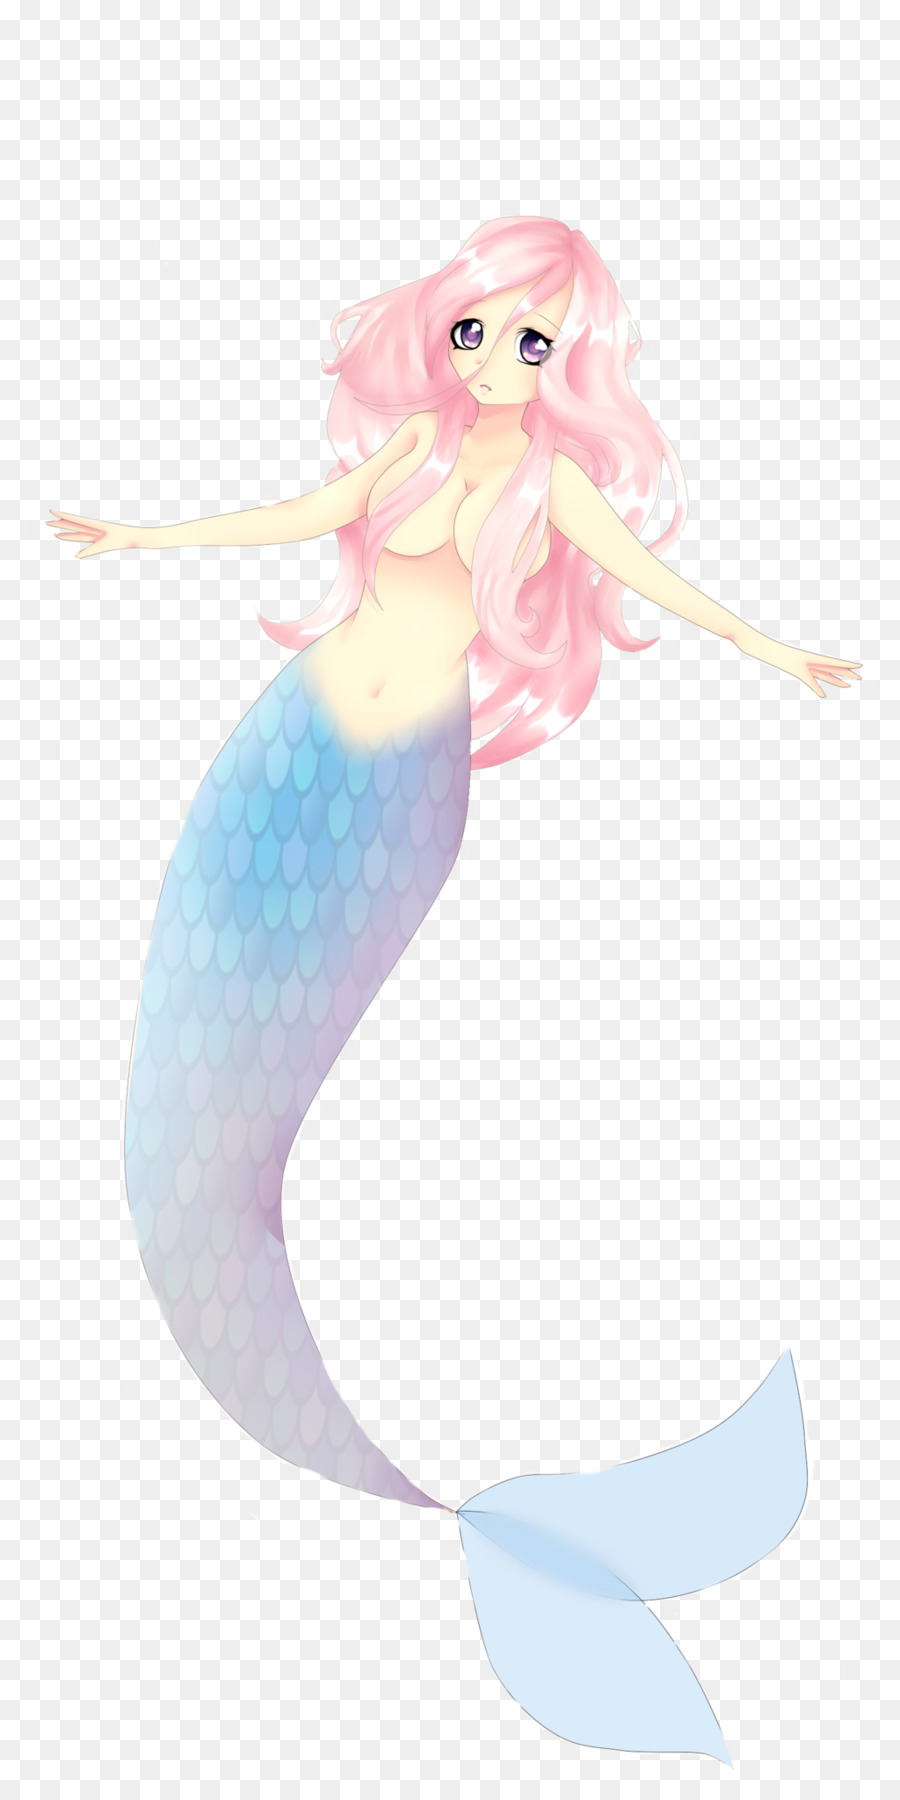 Mermaid Illustration - Mermaid png download - 1024*2048 - Free Transparent Mermaid png Download.